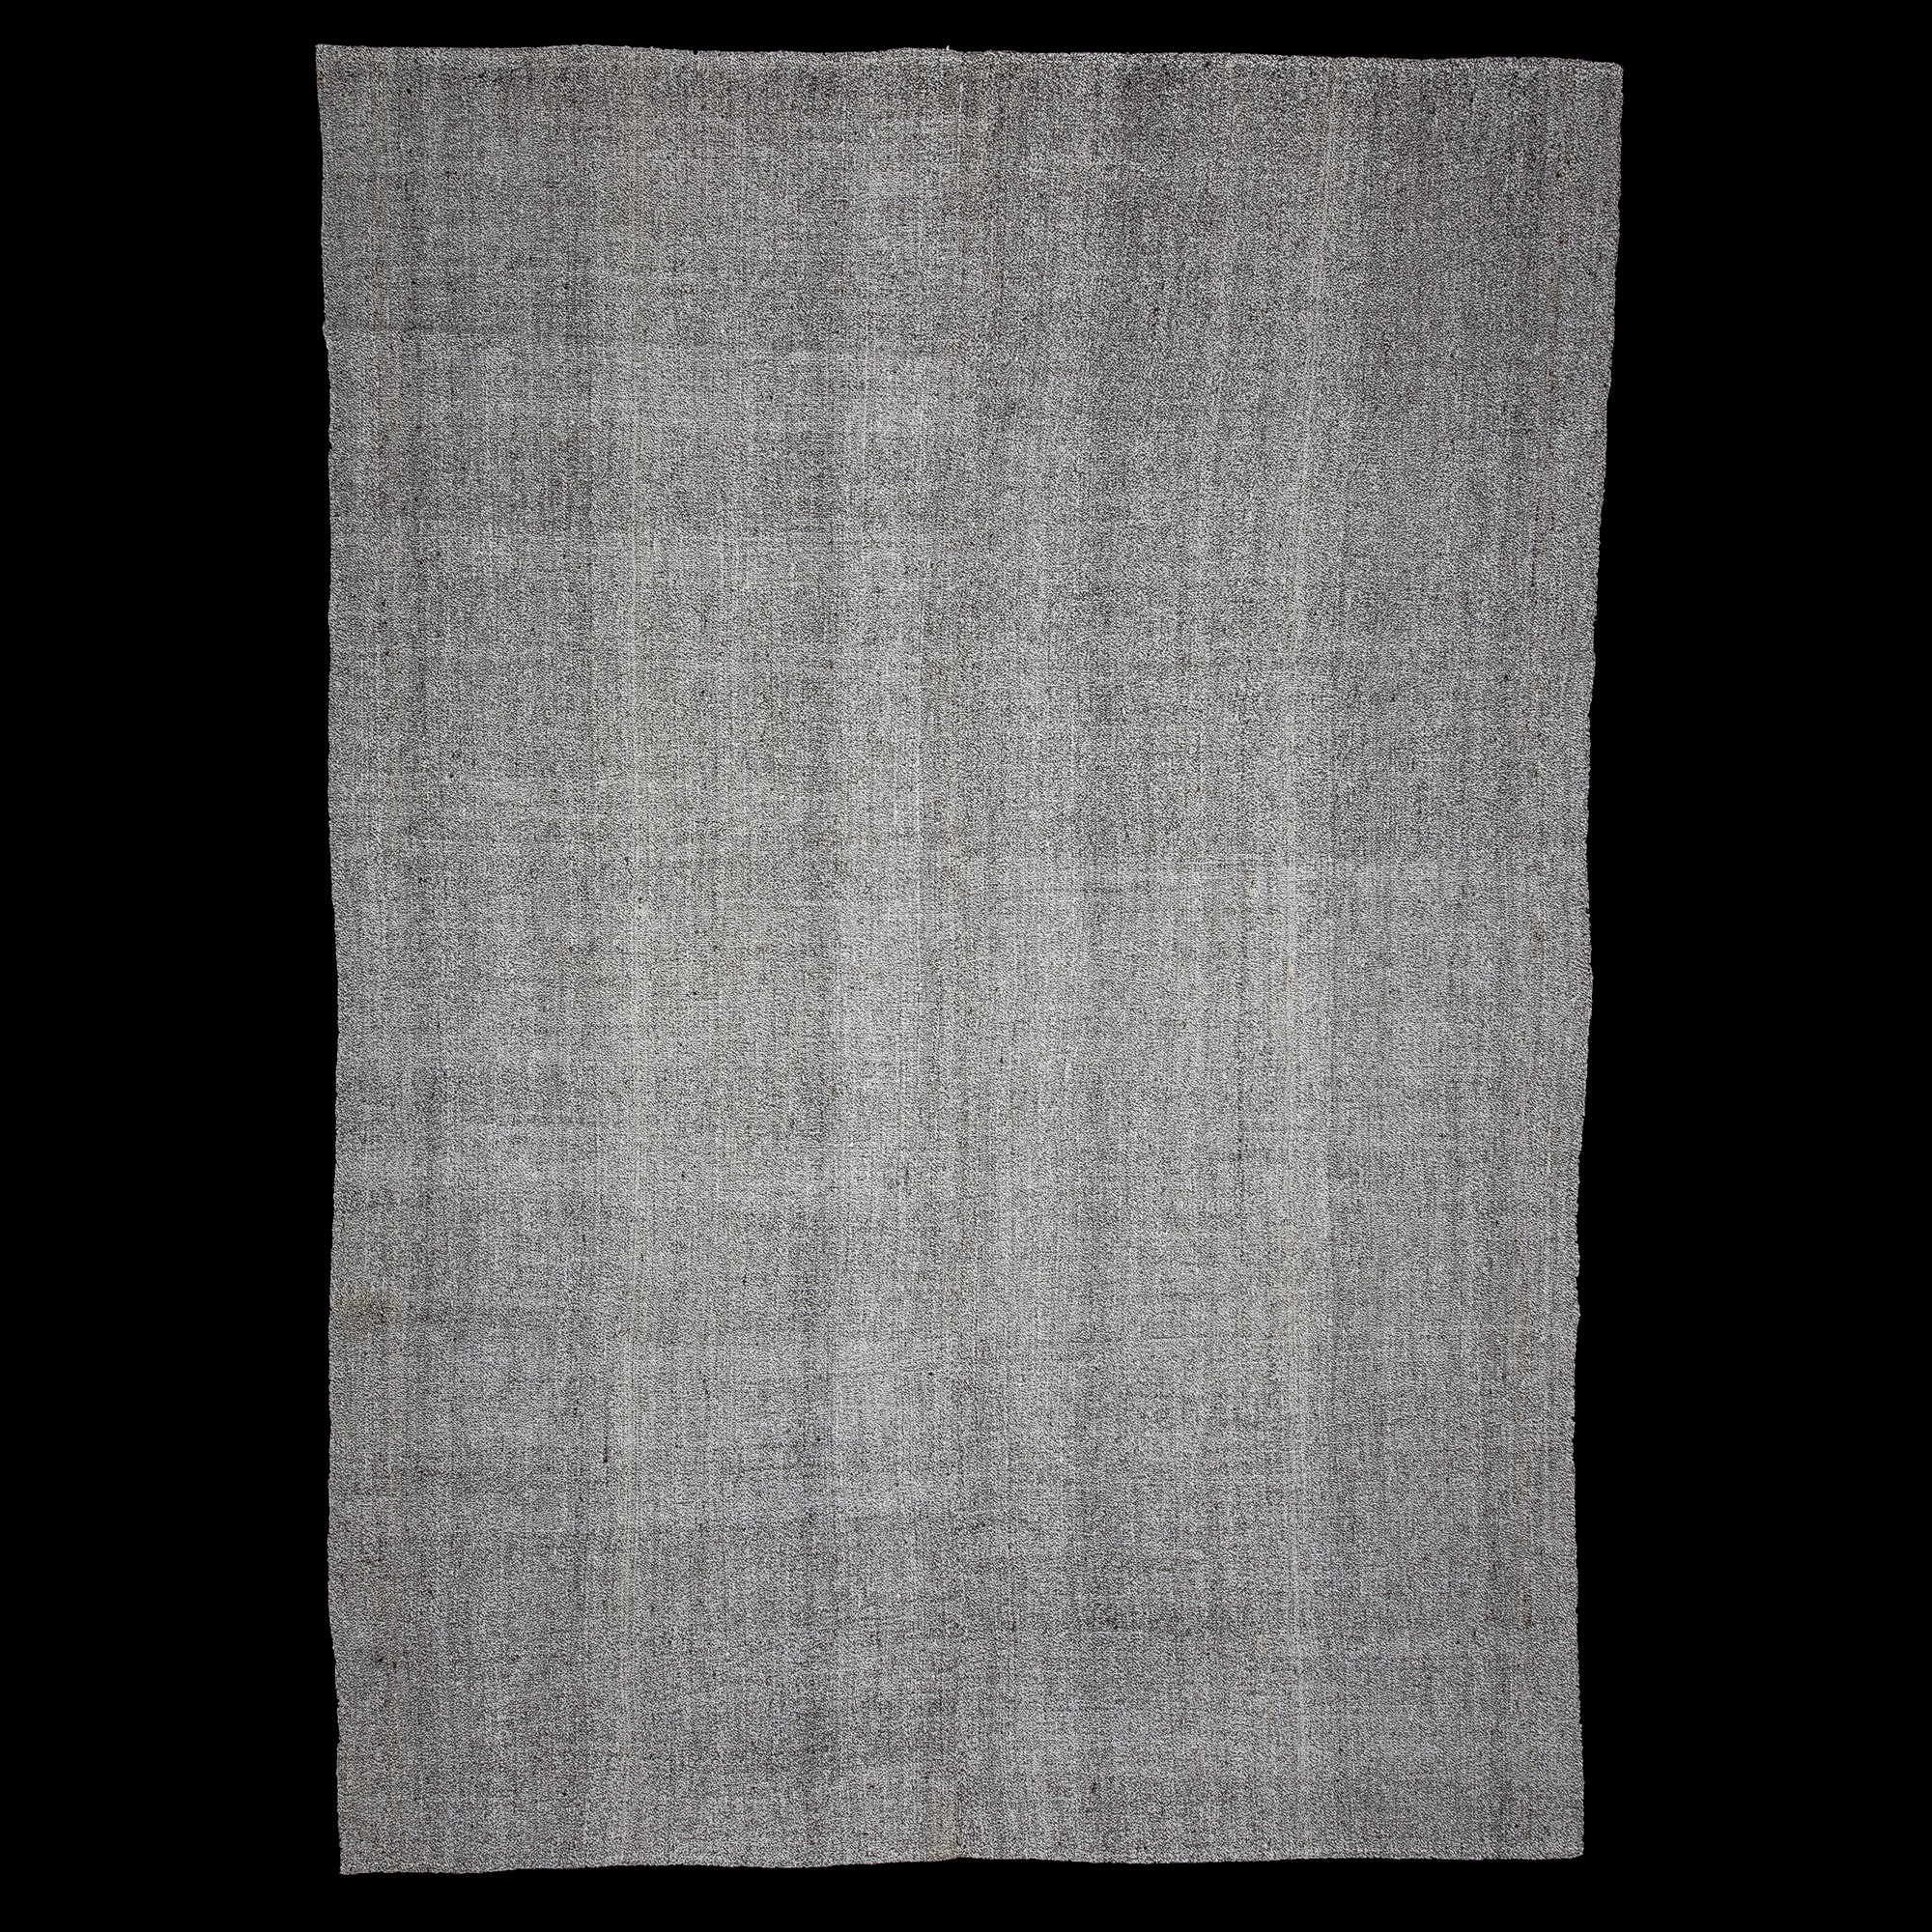 Plain Gray Turkish Flat Weave Kilim Rug 8x11 Feet  233,336 - Grey Turkish Rug 